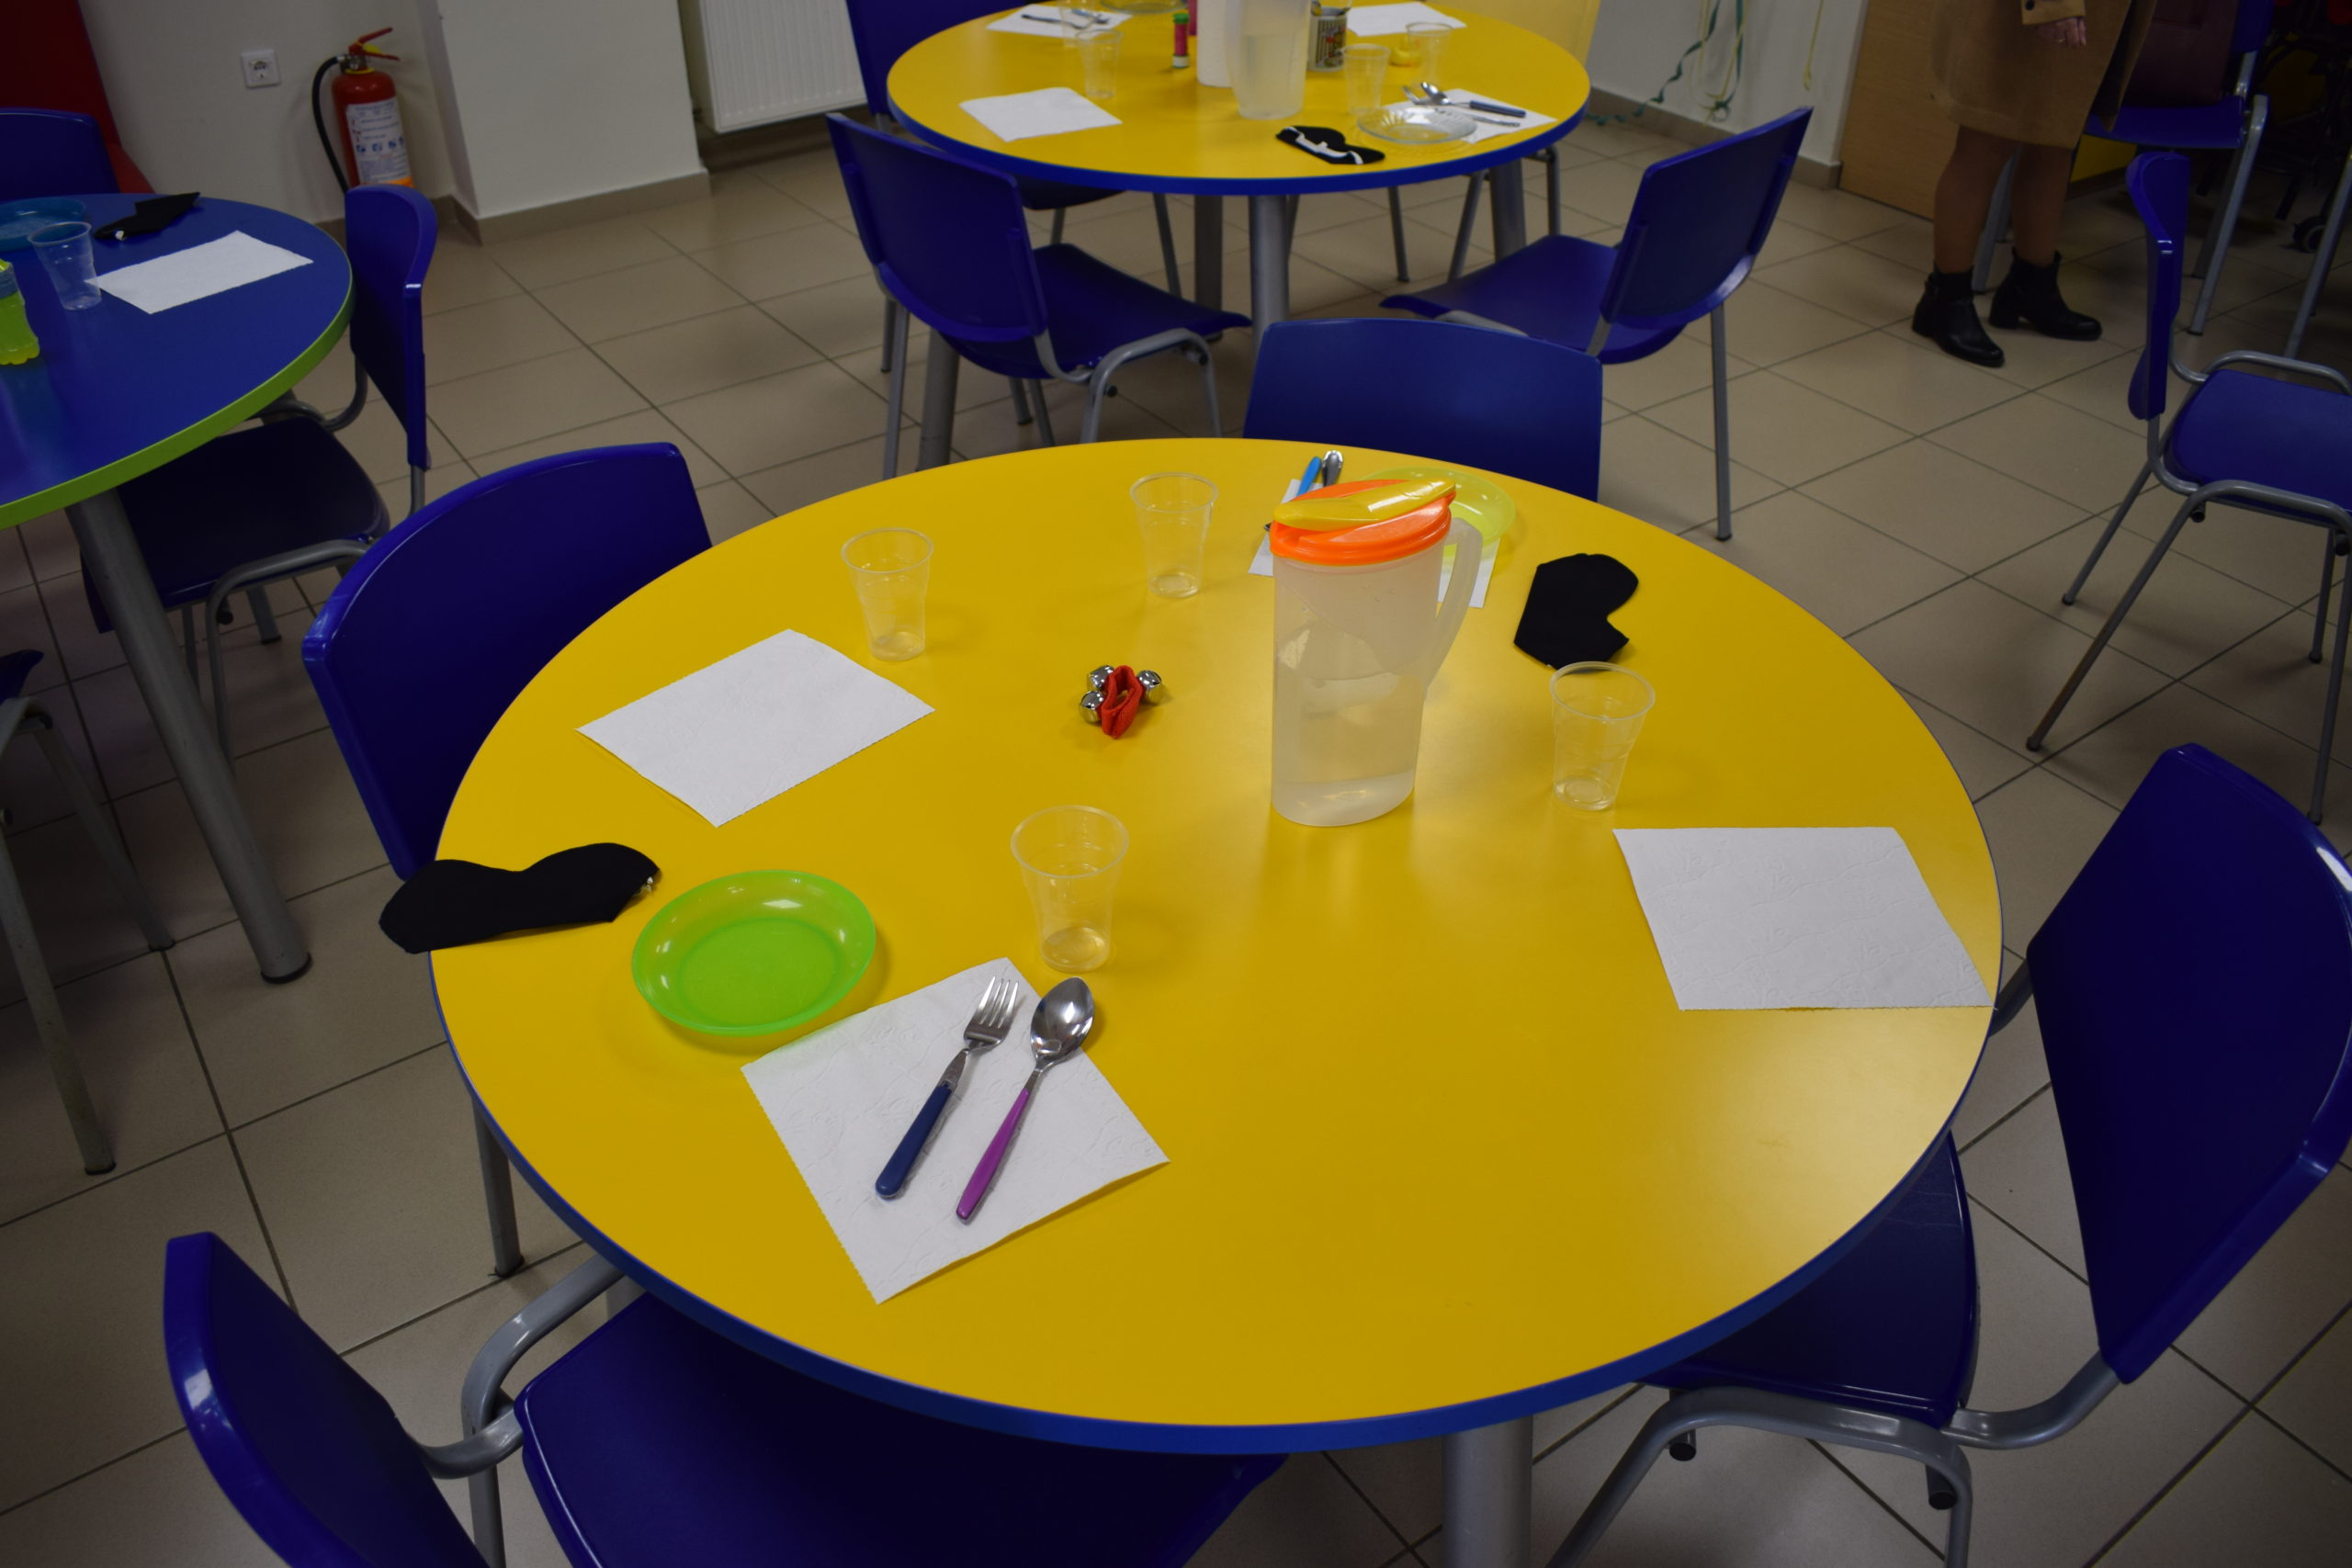 Στη φωτογραφία φαίνεται ένα κίτρινο τραπέζι στην τραπεζαρία της Συζωής που έρχεται σε έντονη οπτική αντίθεση με τις μπλε καρέκλες, το πράσινο πιάτο και την πορτοκαλί κανάτα για νερό.